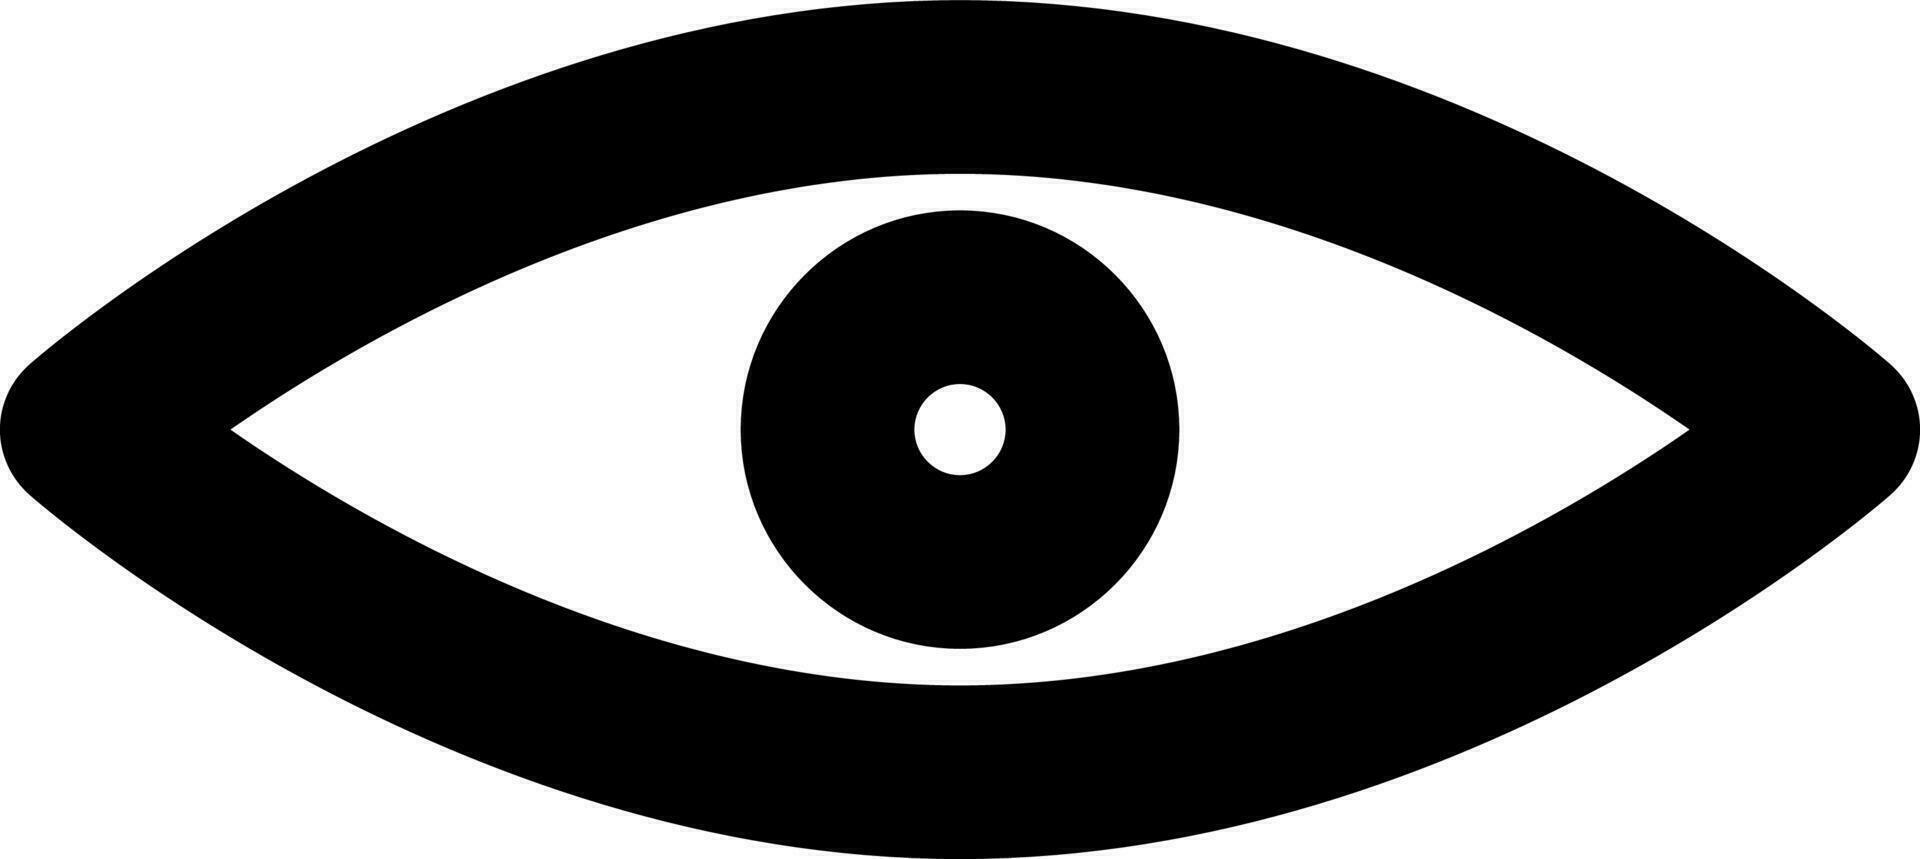 Vektor Illustration von Auge oder Vision Symbol.